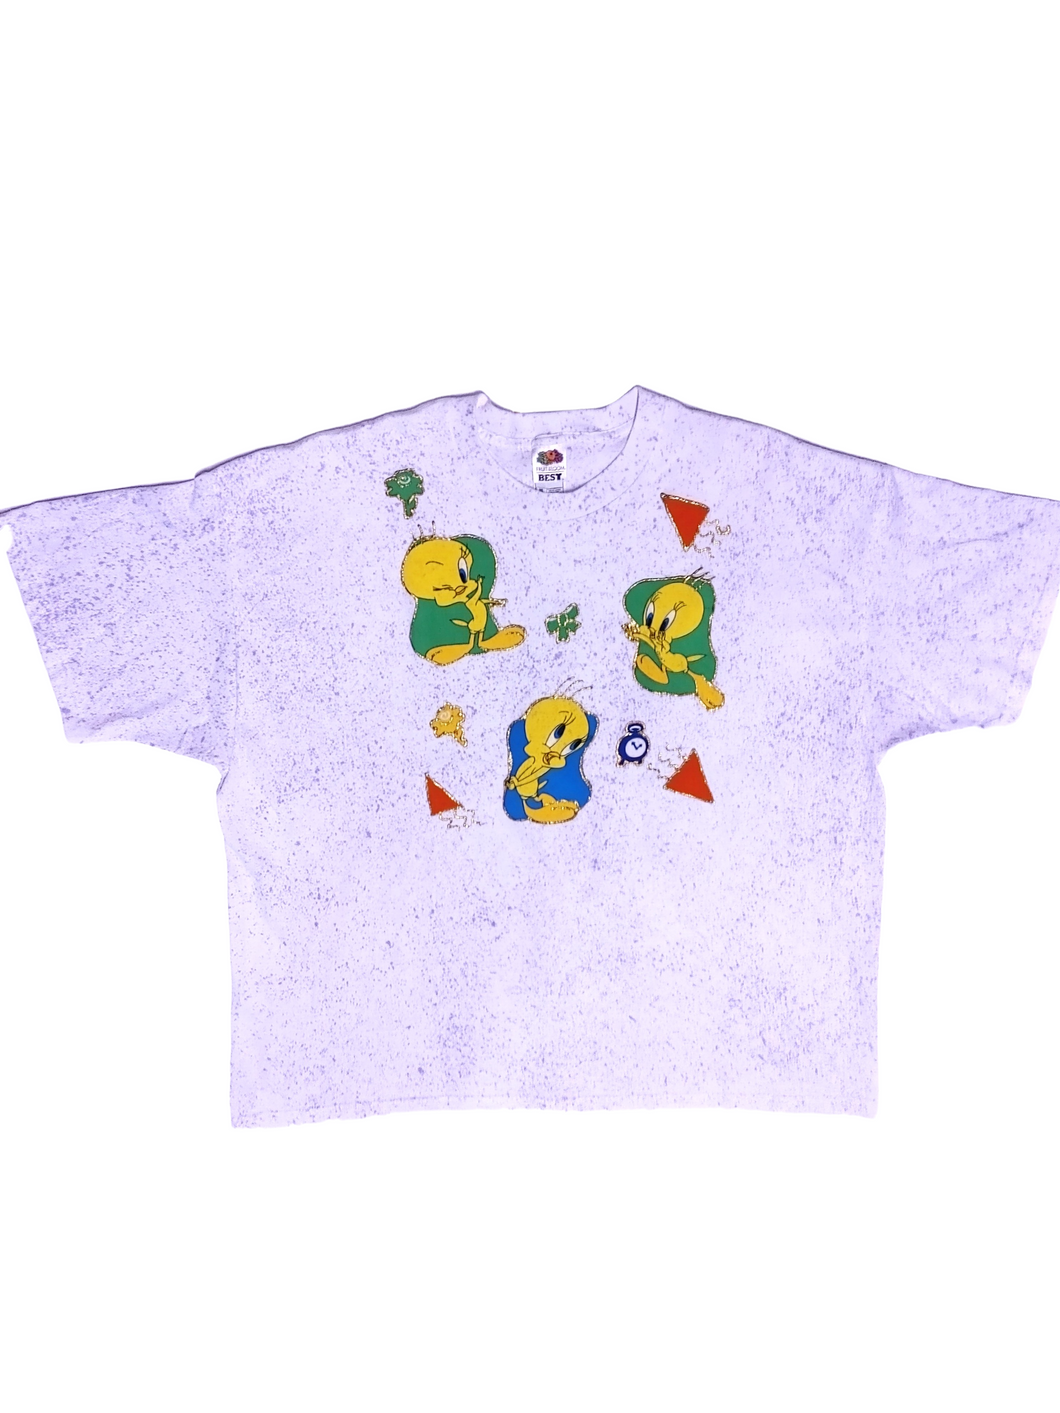 90s Purple Speckled 3D Tweety Bird T-Shirt - Size XXXL